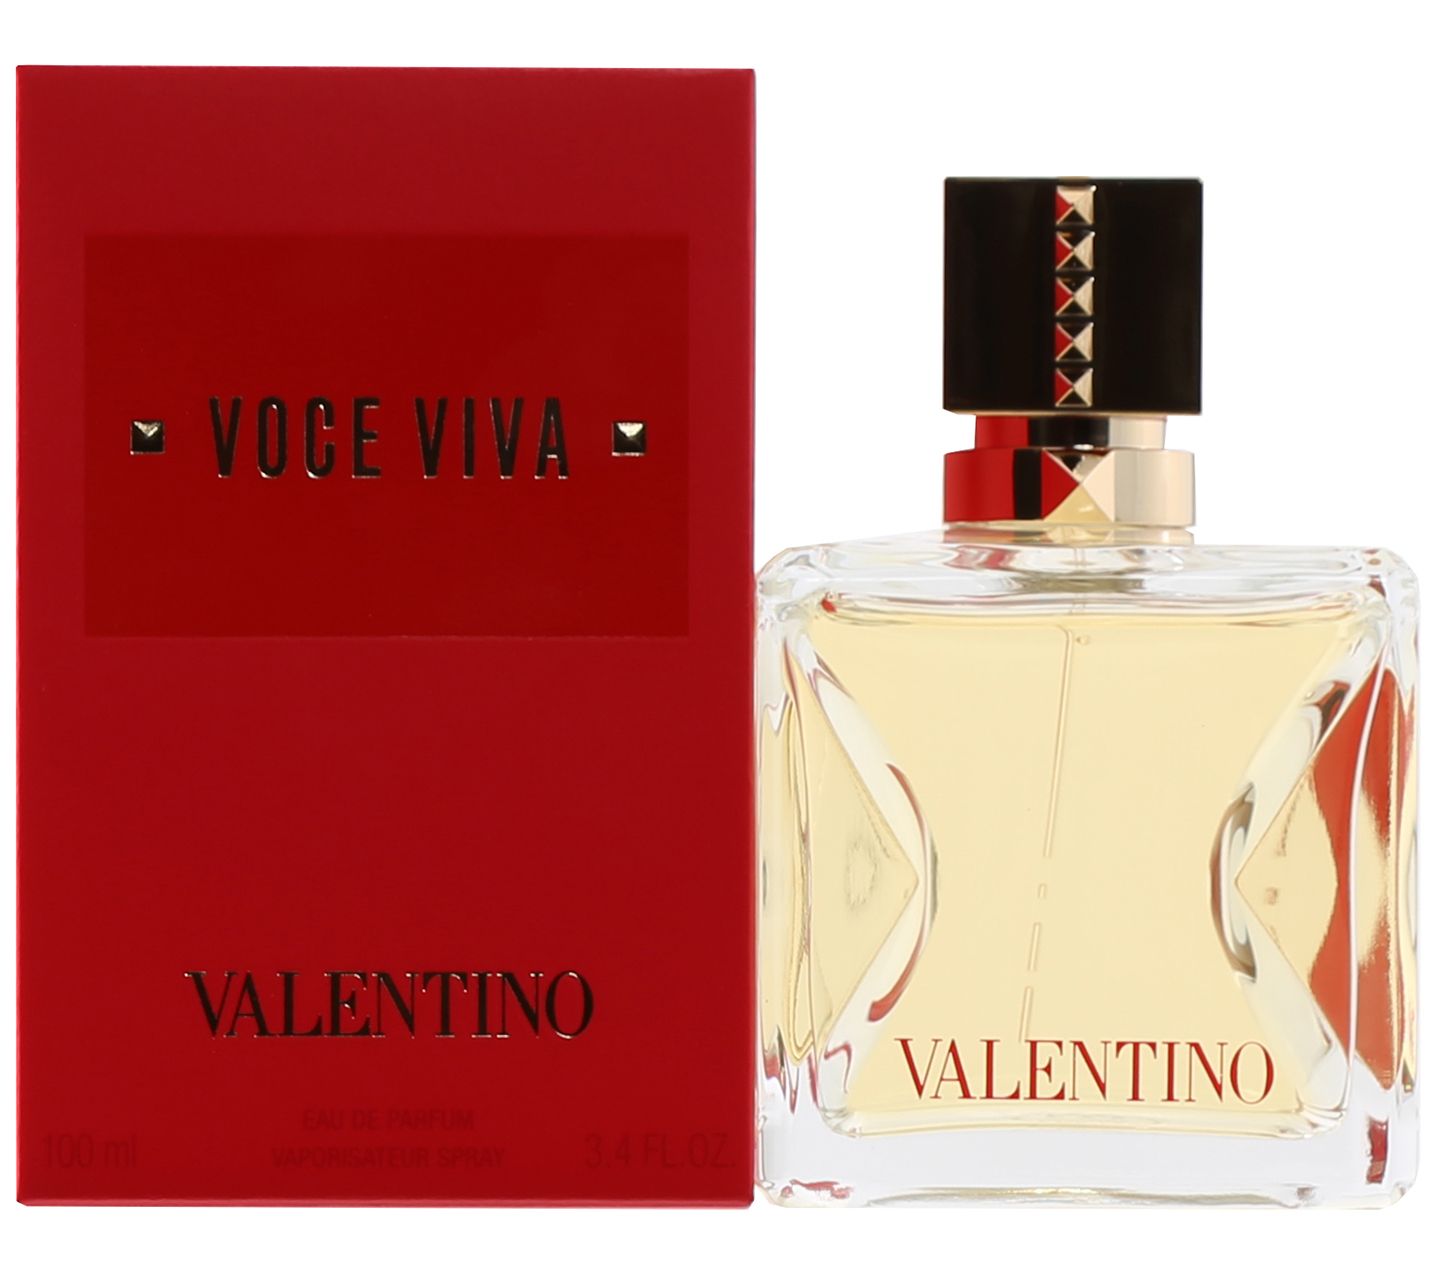 Valentino Voce Viva Eau de 3.4 Parfum oz